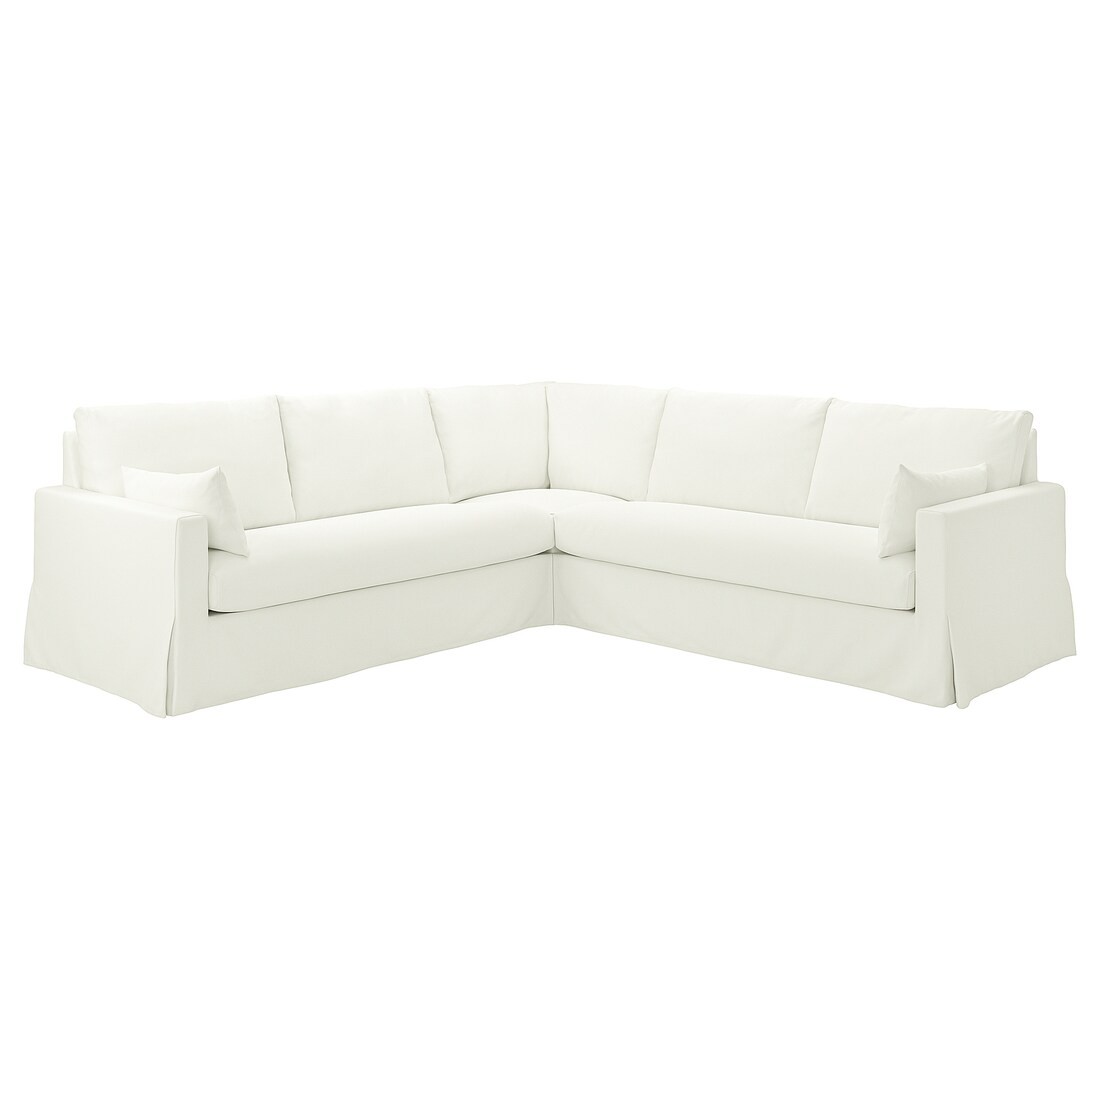 IKEA HYLTARP 4-місний кутовий диван, Халларп білий 19489566 194.895.66